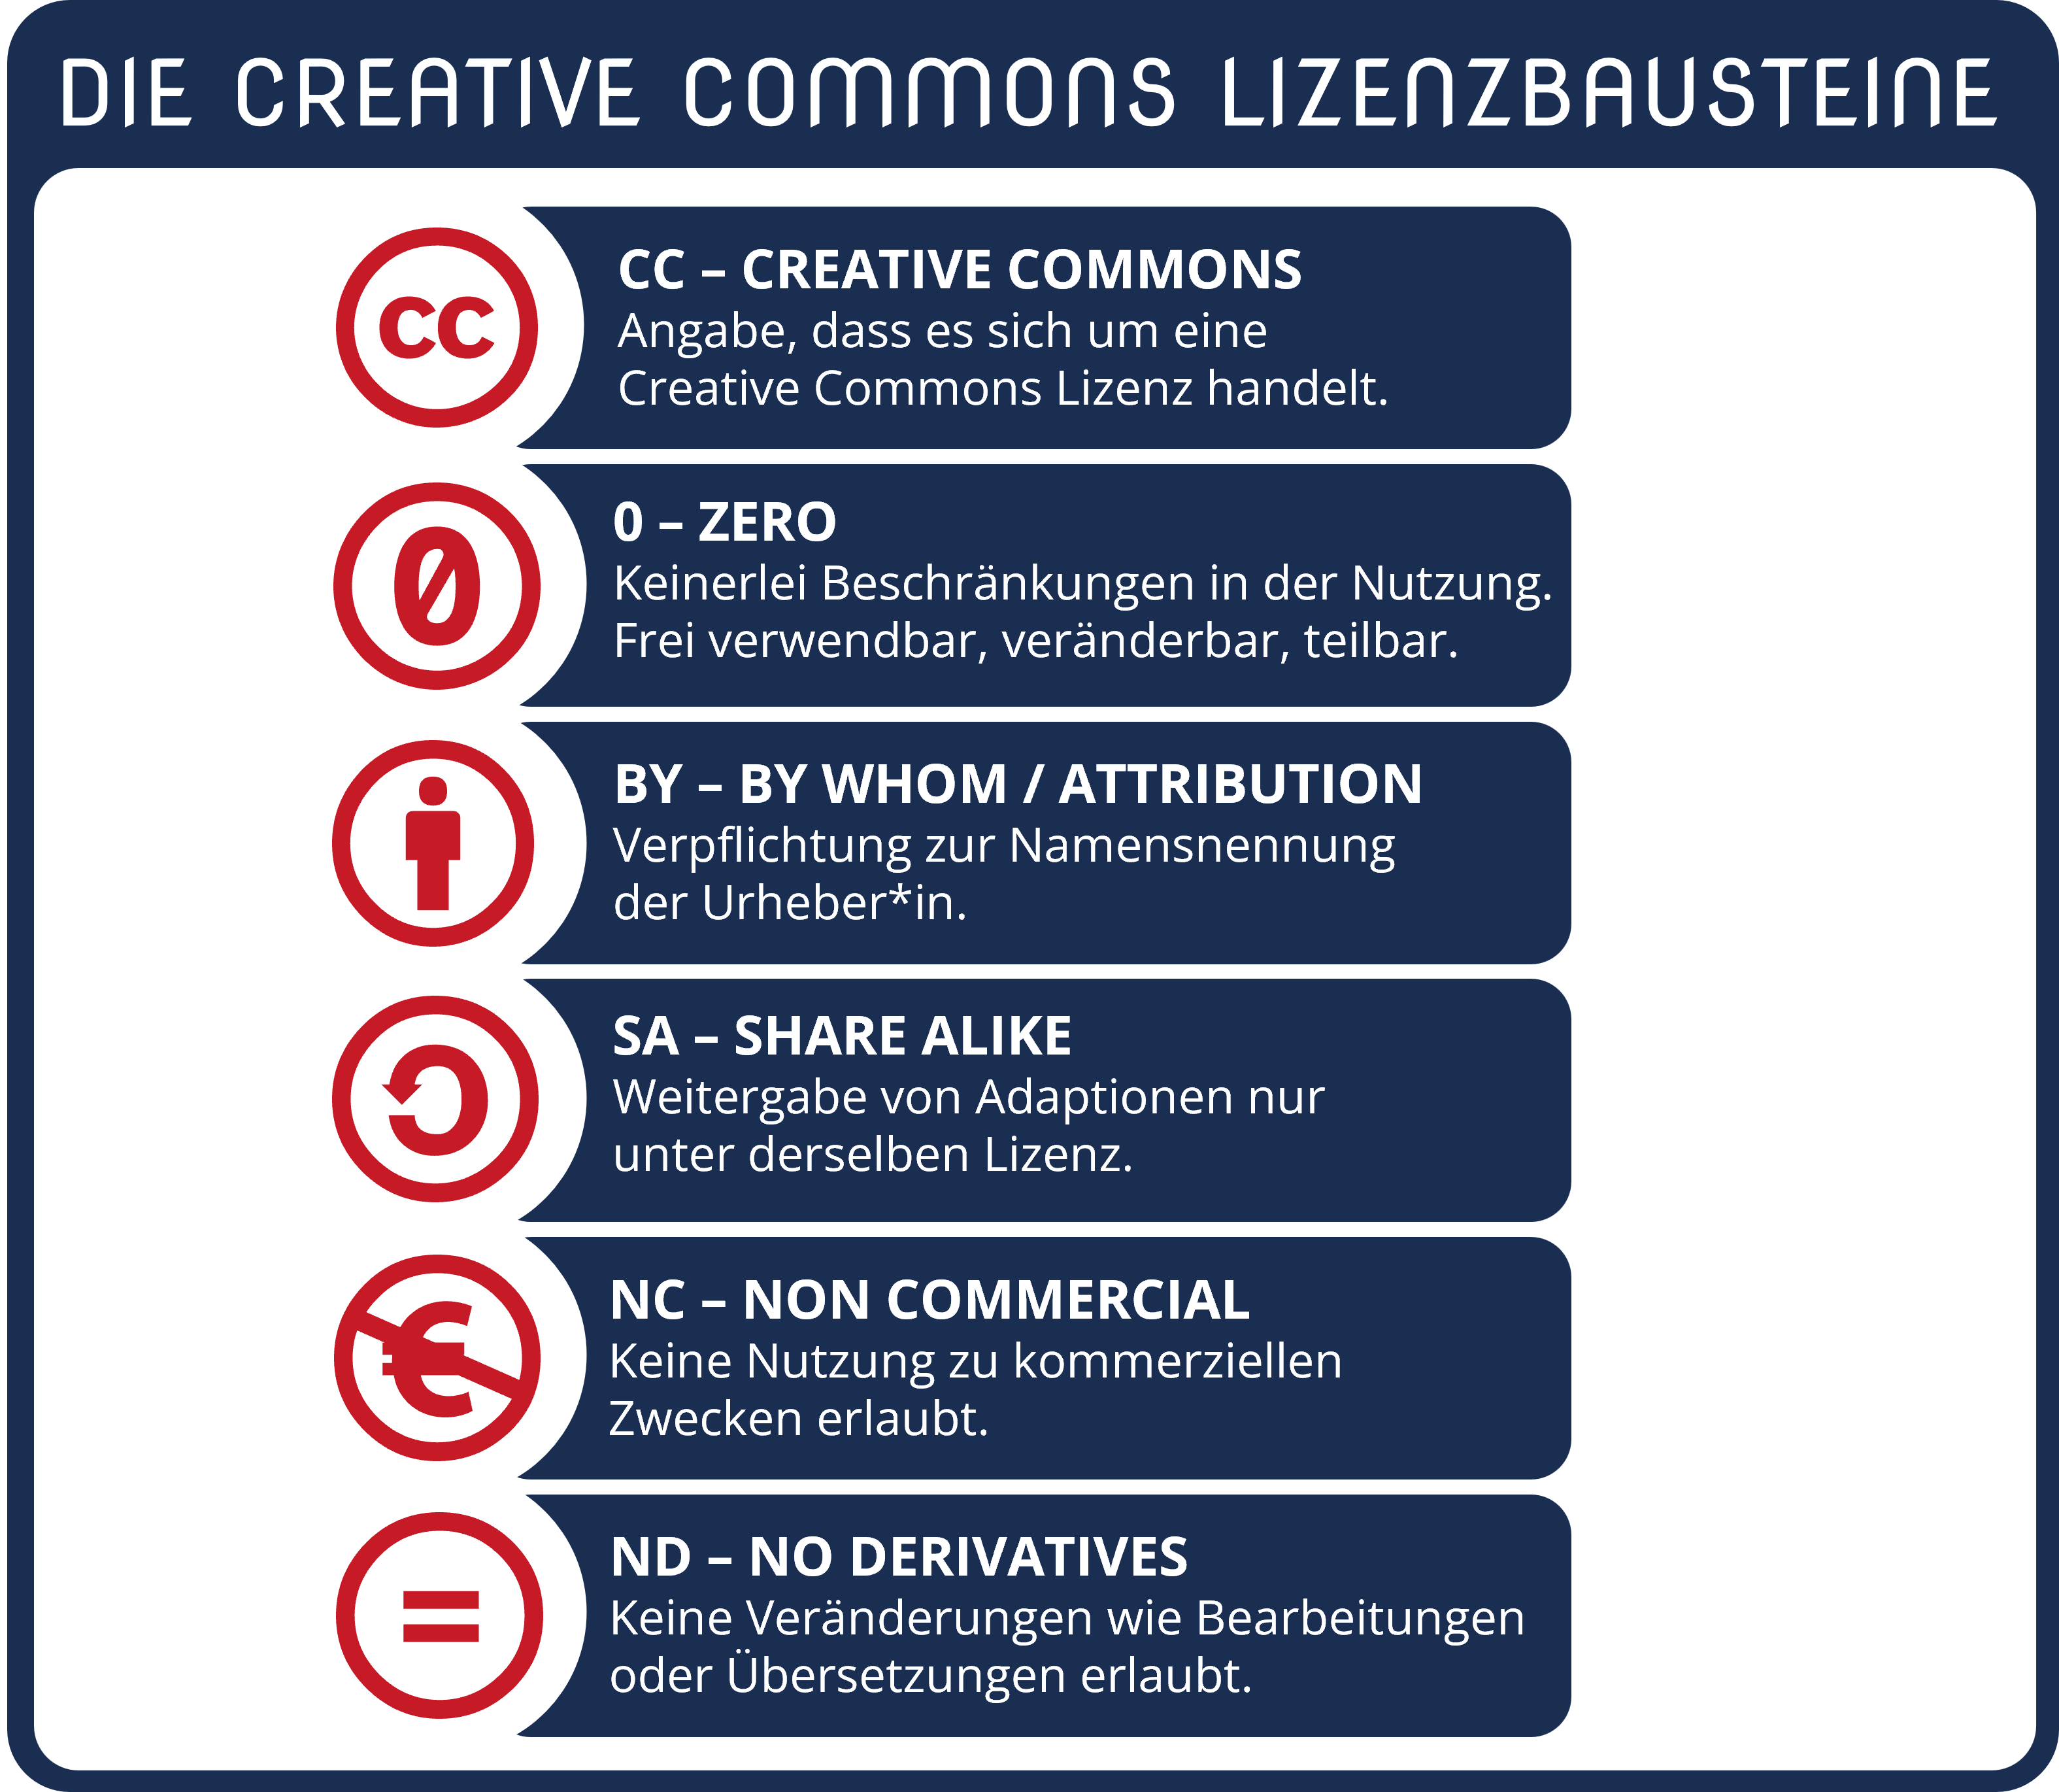 Grafik zu den Creative Commons Lizenzbausteine CC, ZERO, BY, SA, NC und ND und ihren Bedeutungen